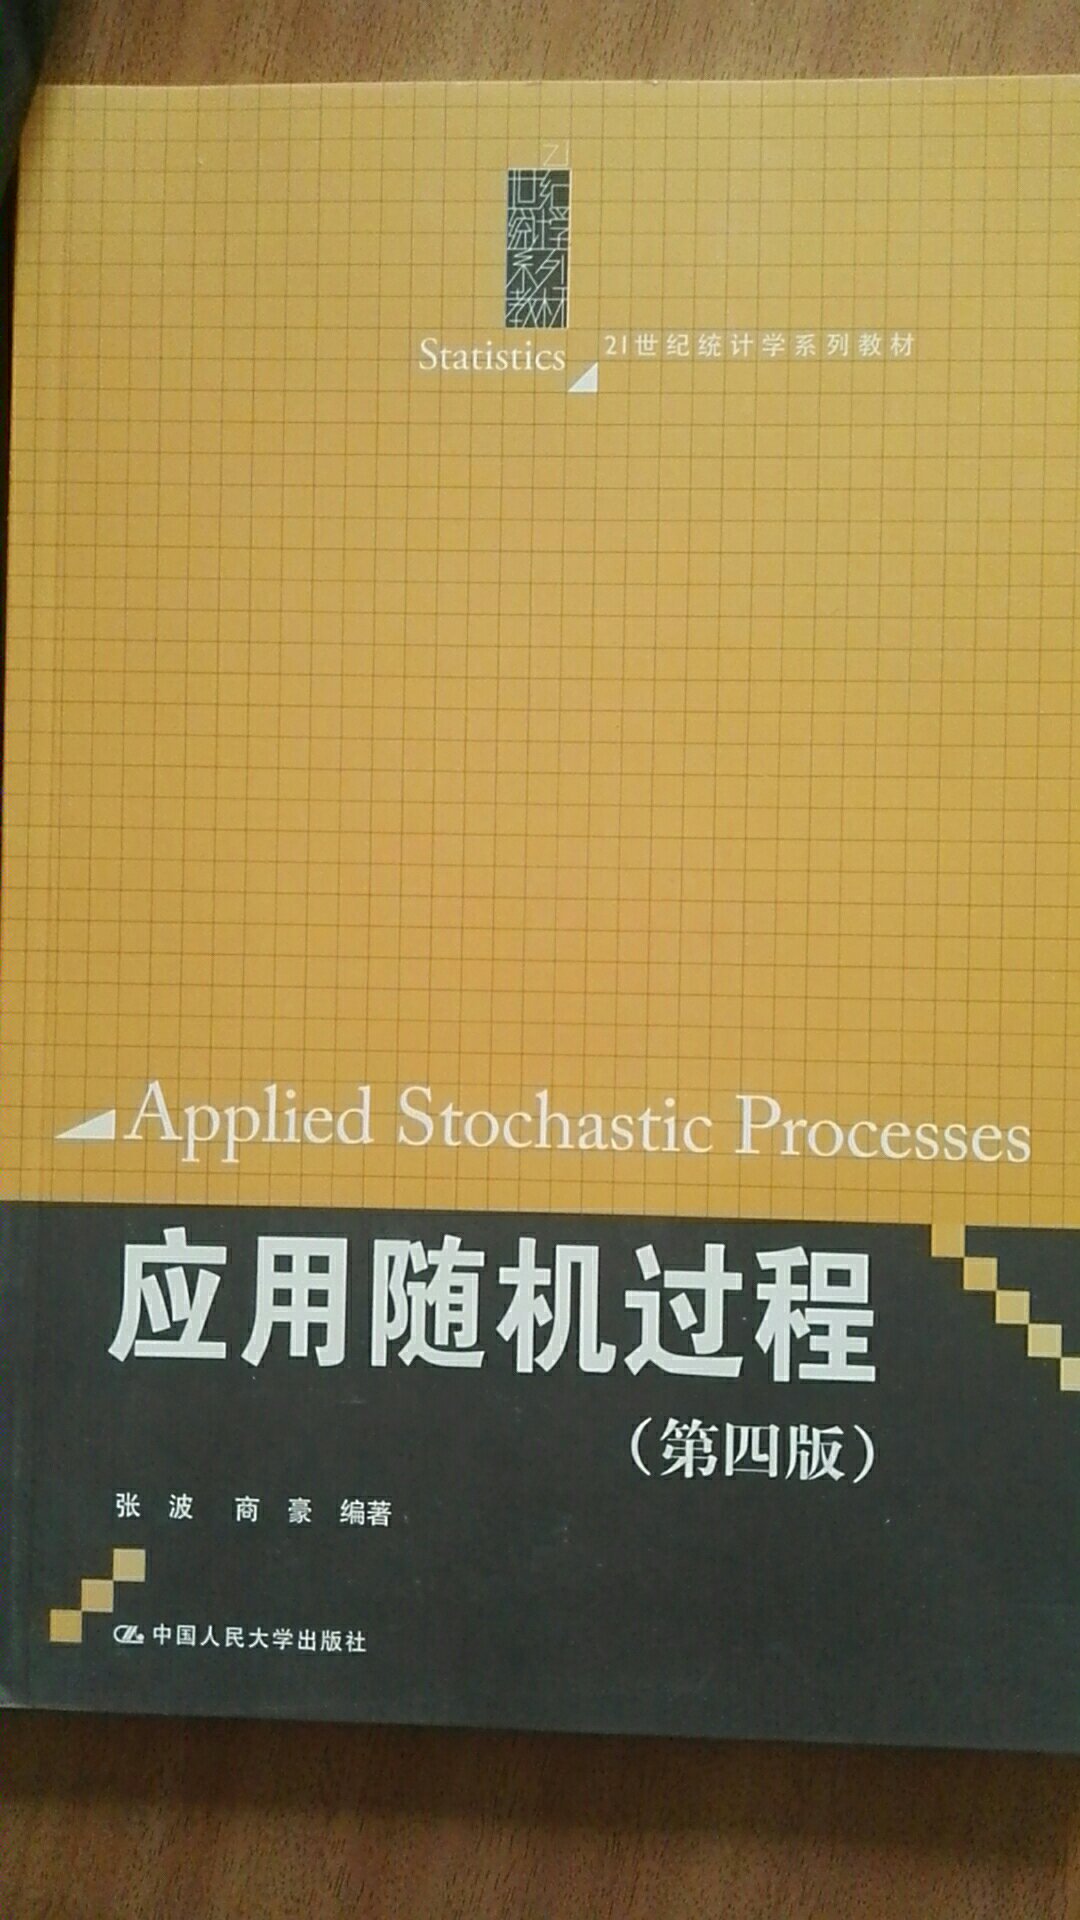 为了学习，买了这本随机过程，希望尽快投入学习中去。